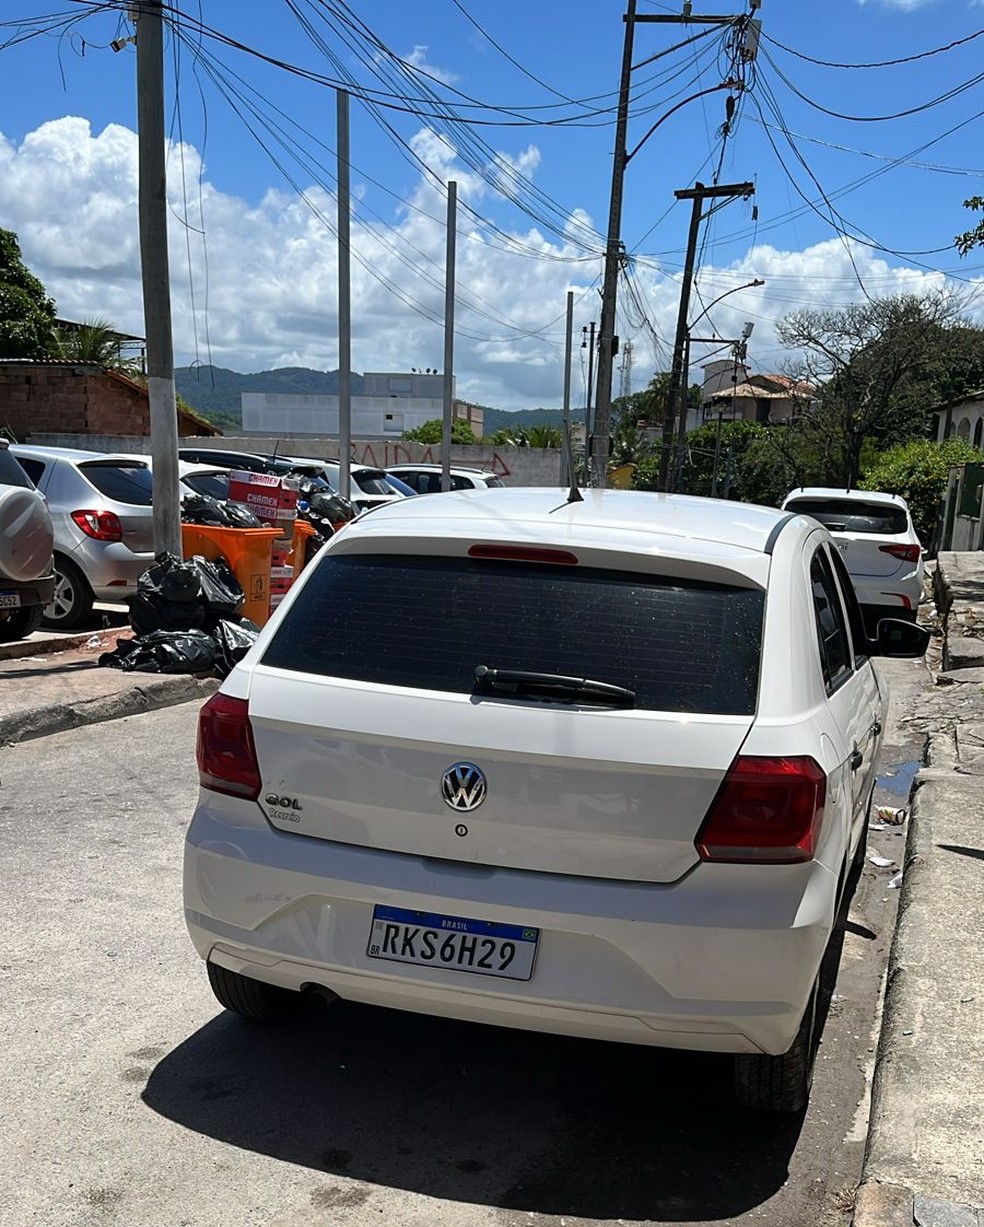 Policiais apreenderam o carro clonado no sábado (2), em Maricá, na Região Metropolitana do Rio — Foto: Reprodução